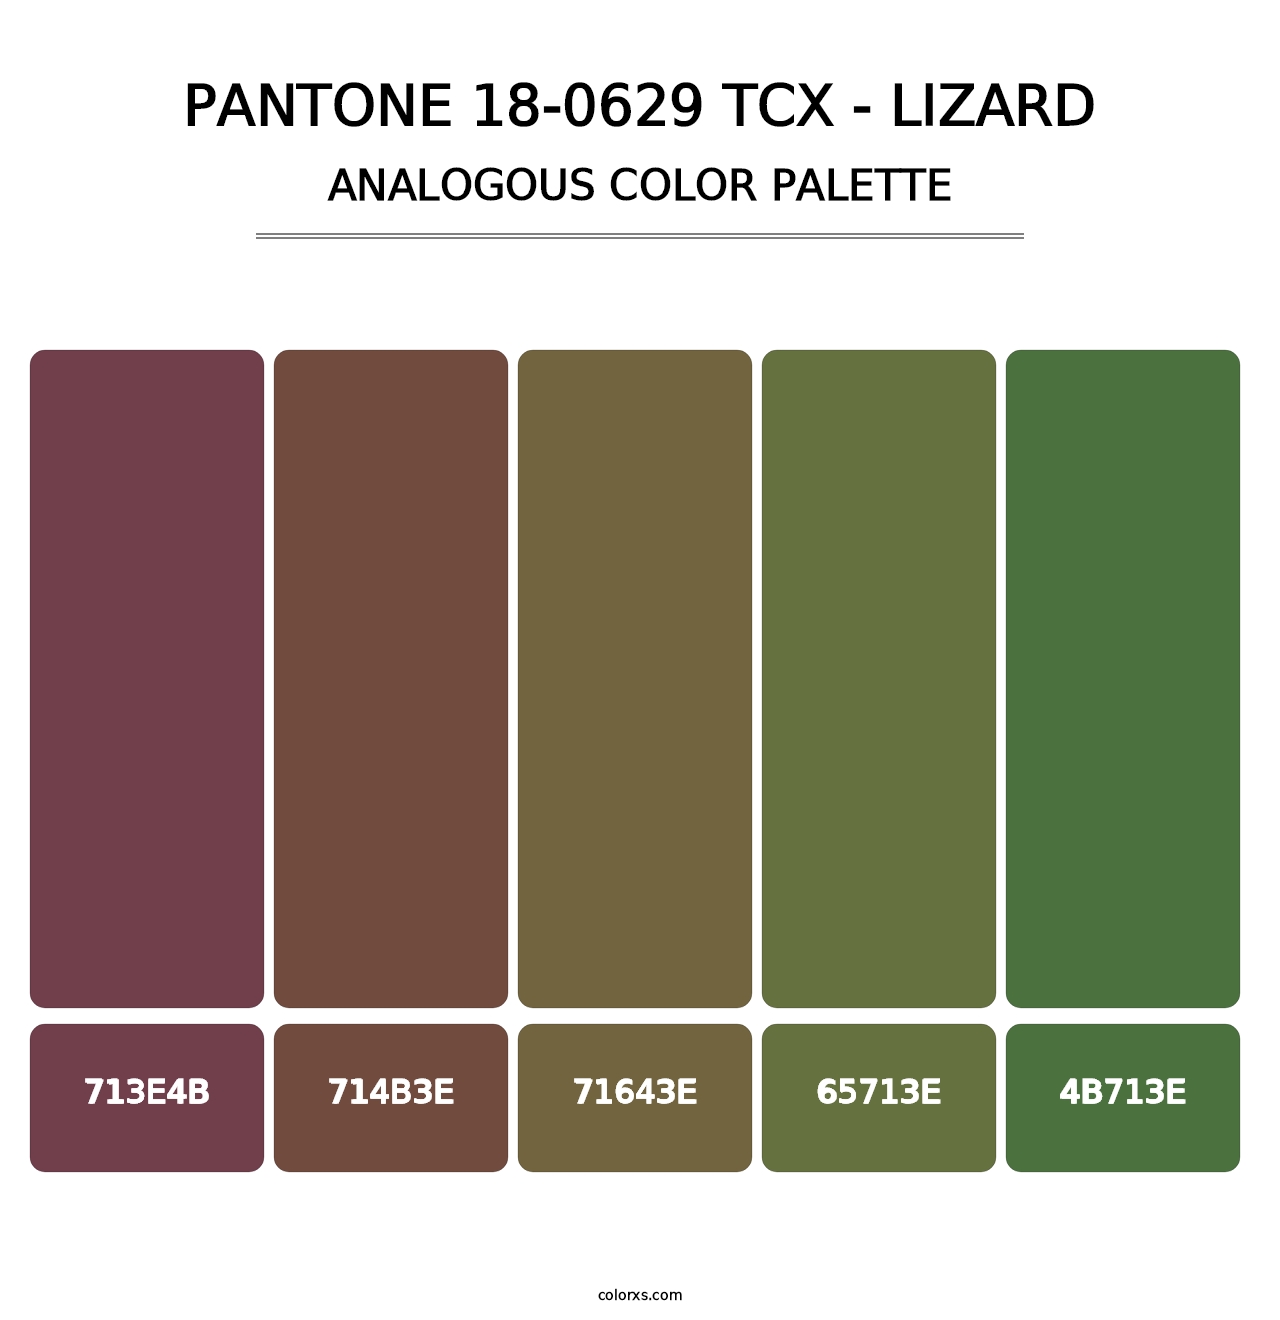 PANTONE 18-0629 TCX - Lizard - Analogous Color Palette